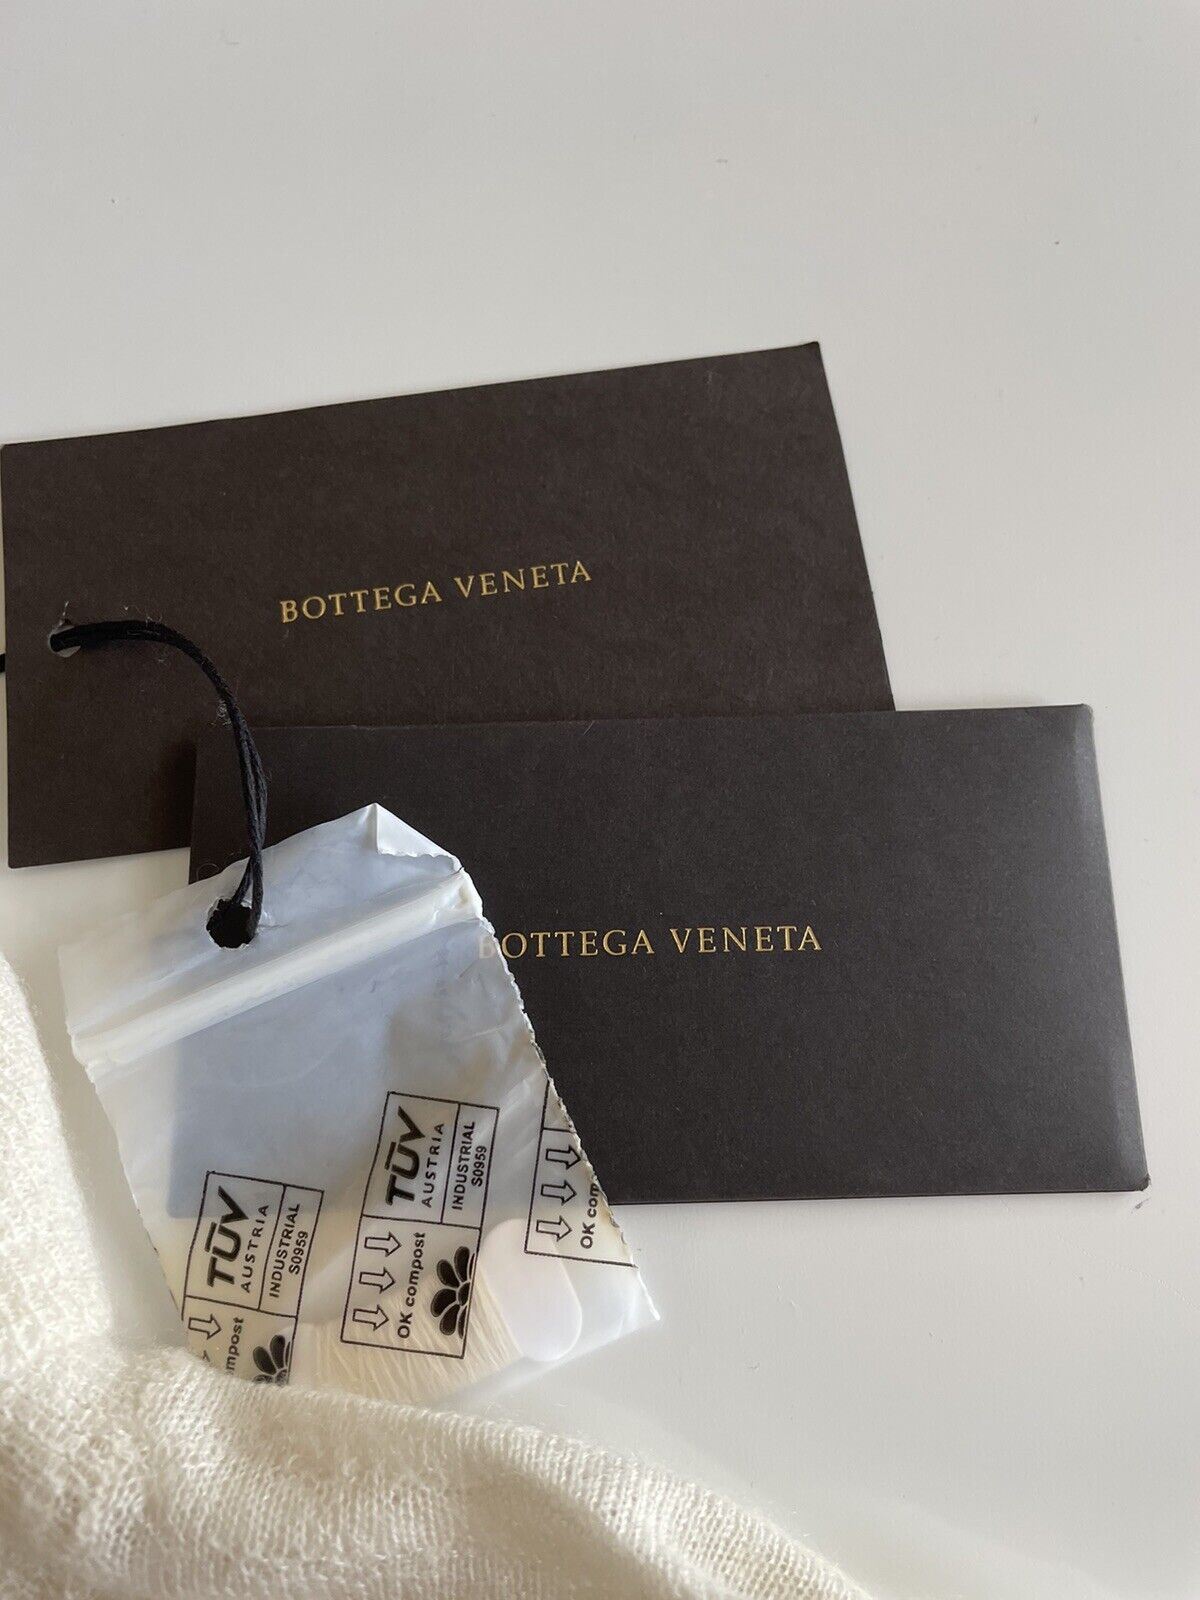 СЗТ 1150 долларов США Bottega Veneta Женский кашемировый свитер желто-коричневого цвета 3 США (42 Bottega) 601699